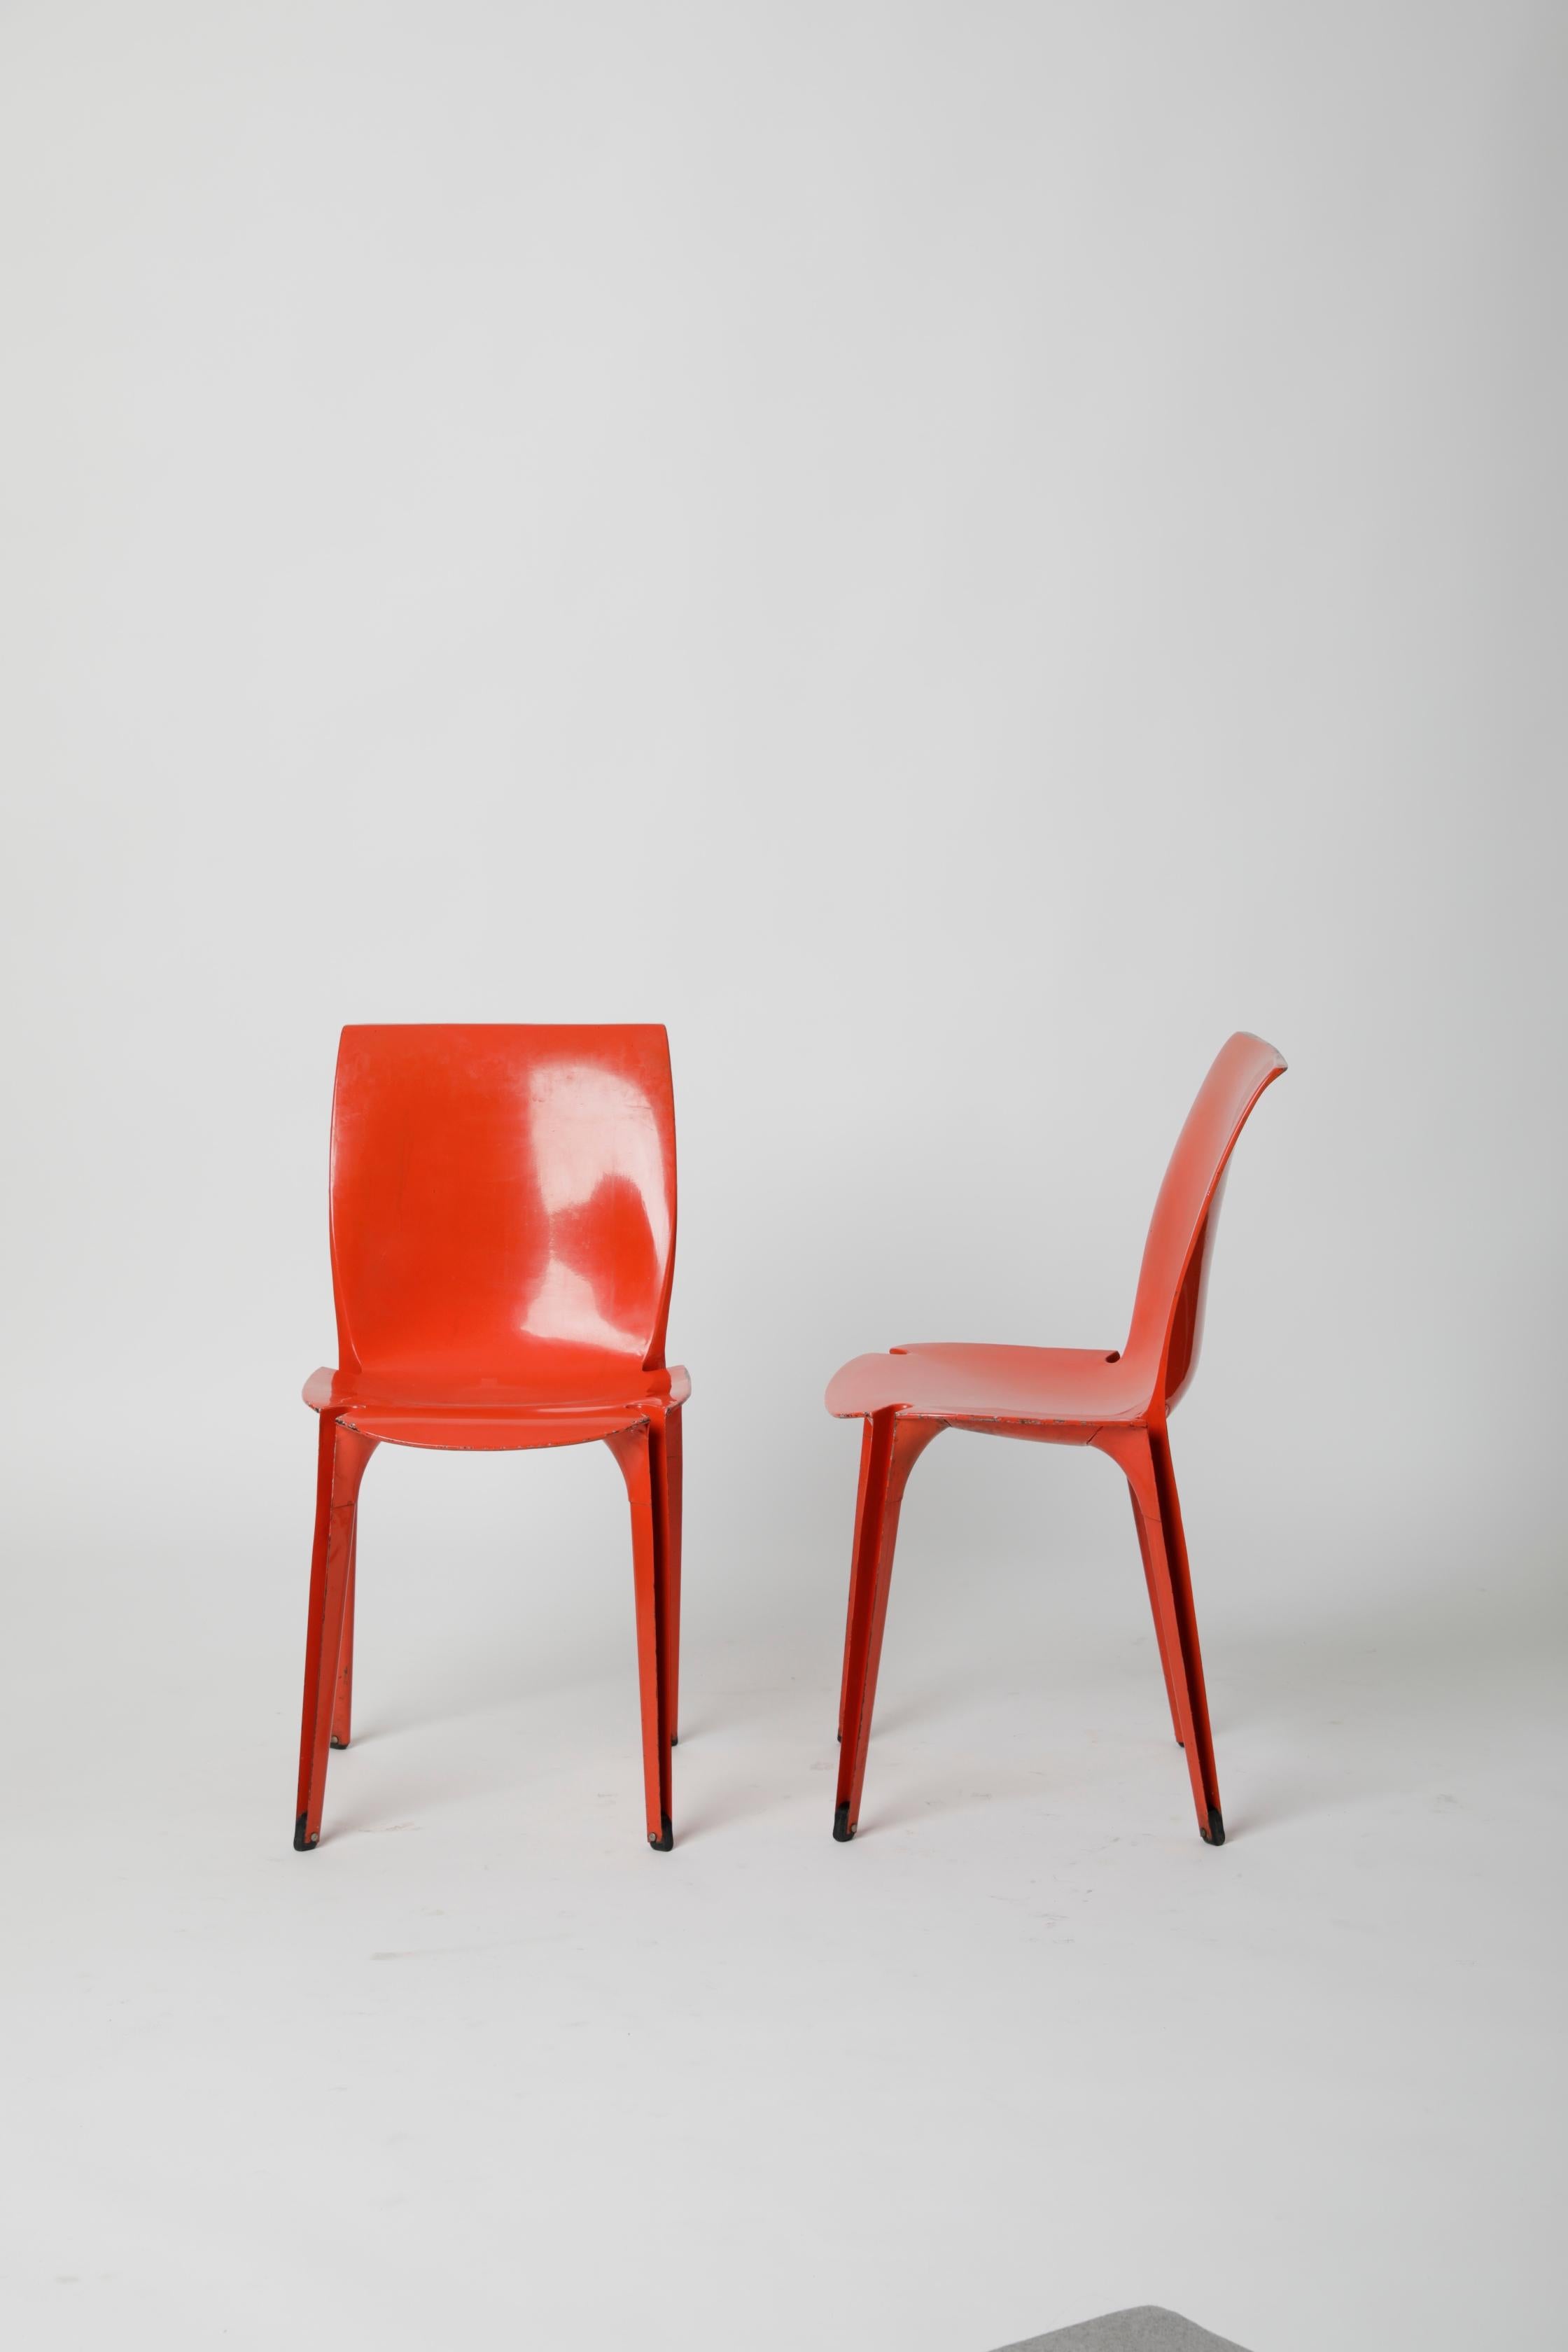 Conçue par le célèbre architecte italien Marco Zanuso et Richard Sapper en 1959, la chaise a une forme absolument futuriste pour l'époque à laquelle elle a été fabriquée. Le 